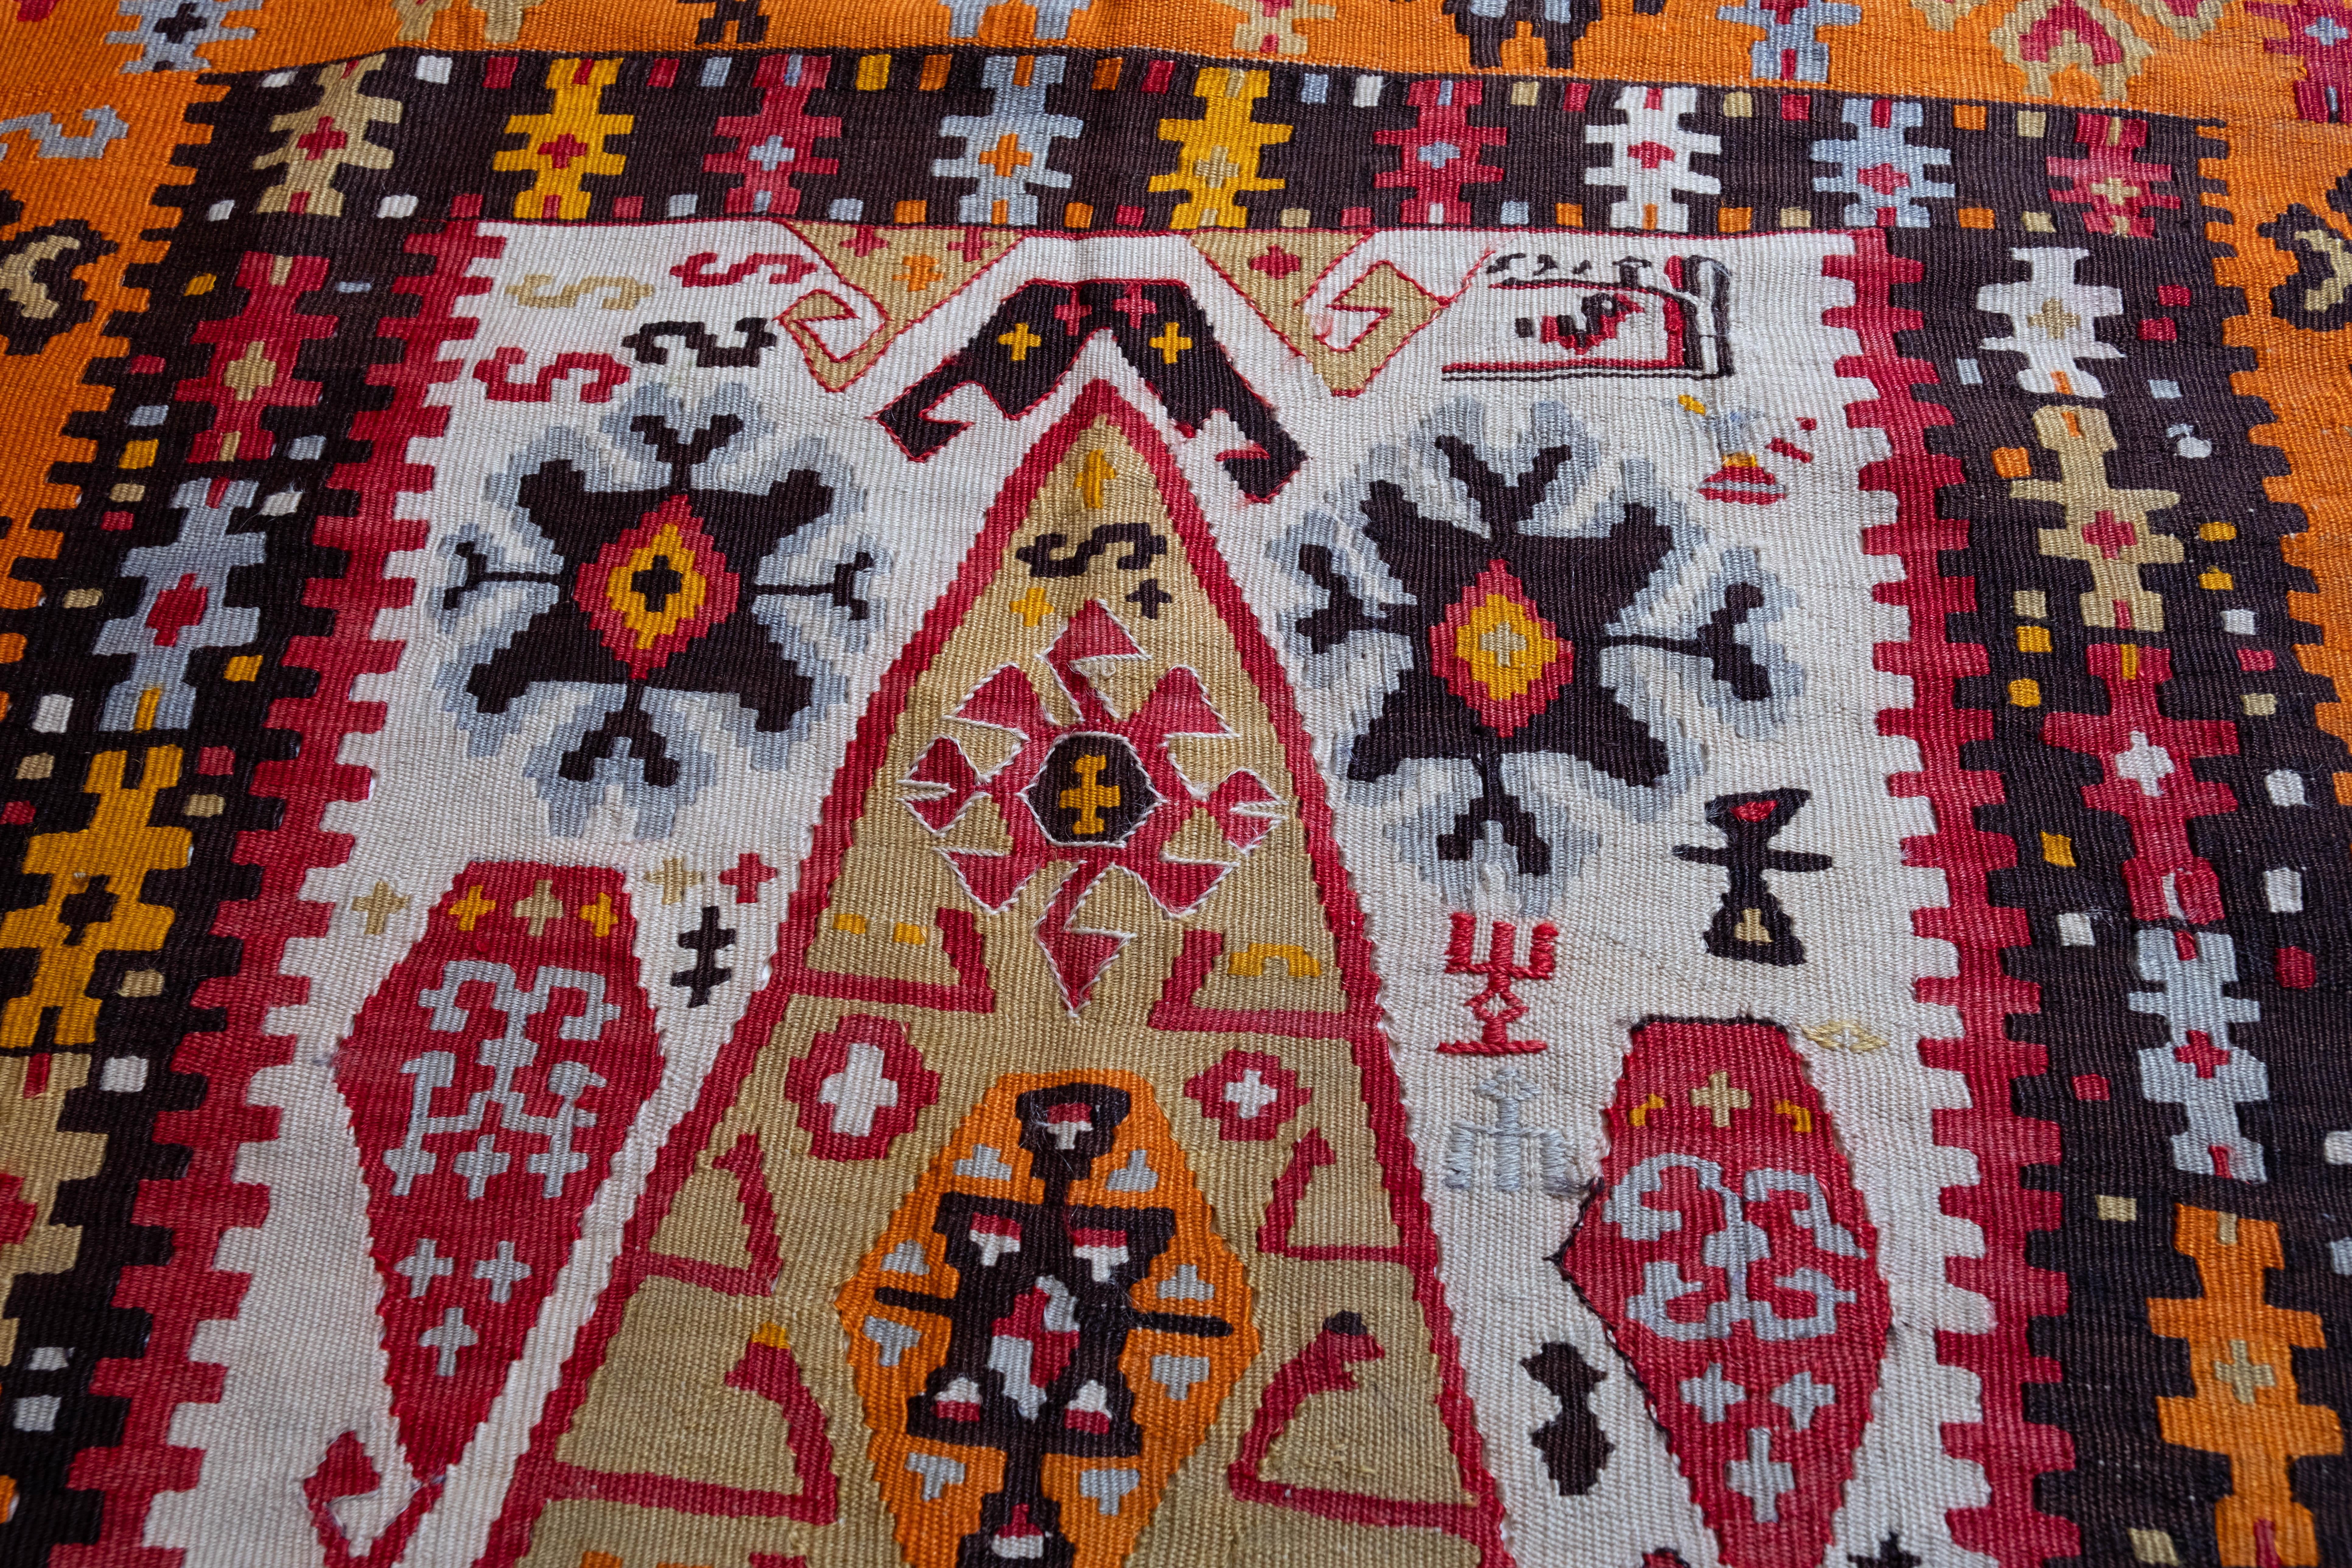 Il s'agit d'un vieux kilim vintage d'Anatolie orientale de la région de Bayburt, dont la composition des couleurs est rare et magnifique. 

Ce kilim antique de grande collection présente de merveilleuses couleurs et textures particulières, typiques